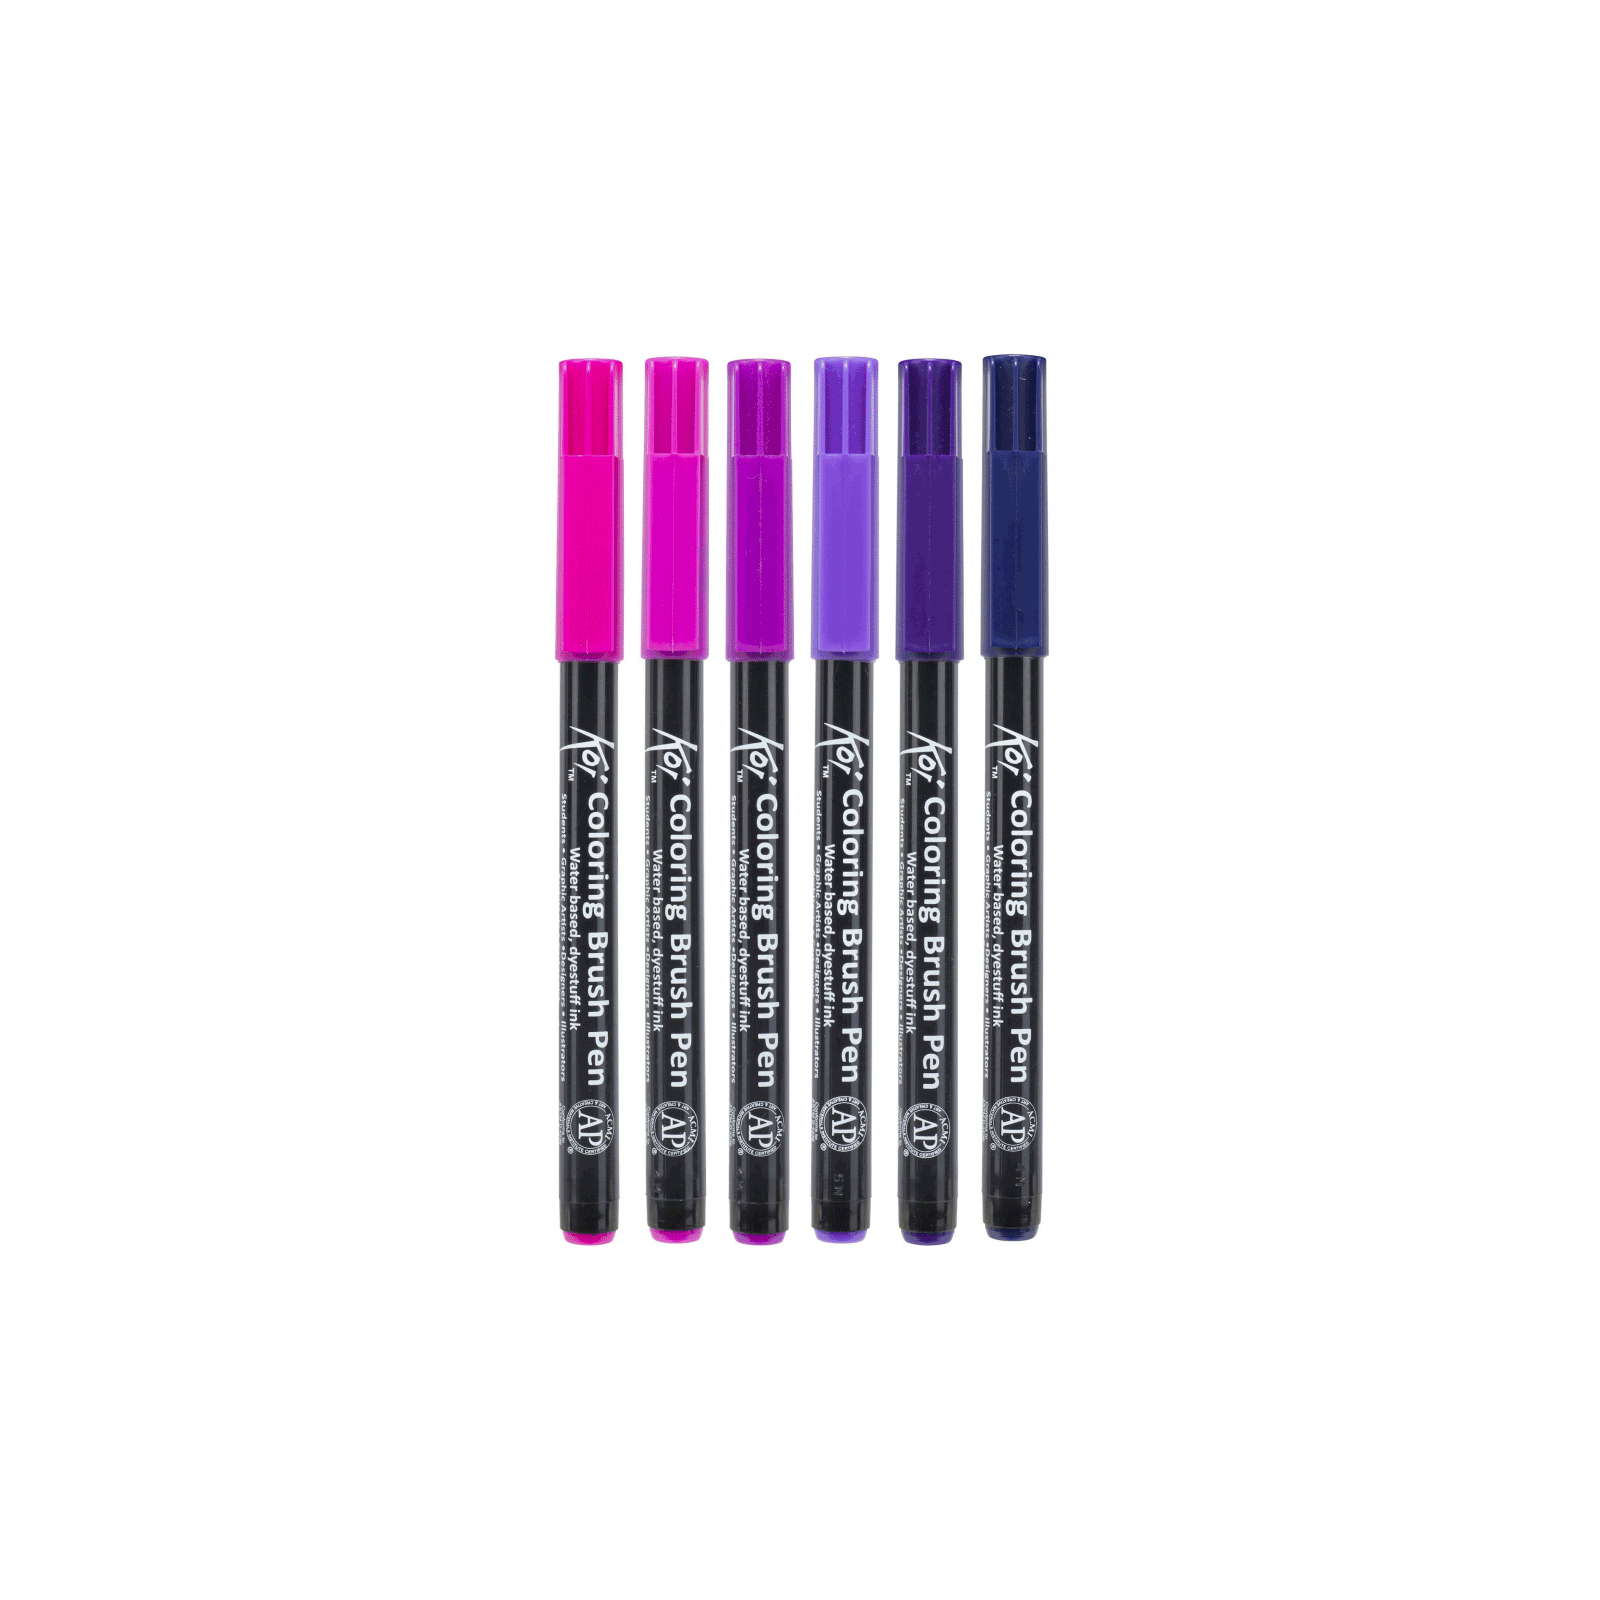 Художественный маркер KOI набор Coloring Brush Pen, GALAXY 6 цветов (8712079448721) изображение 2